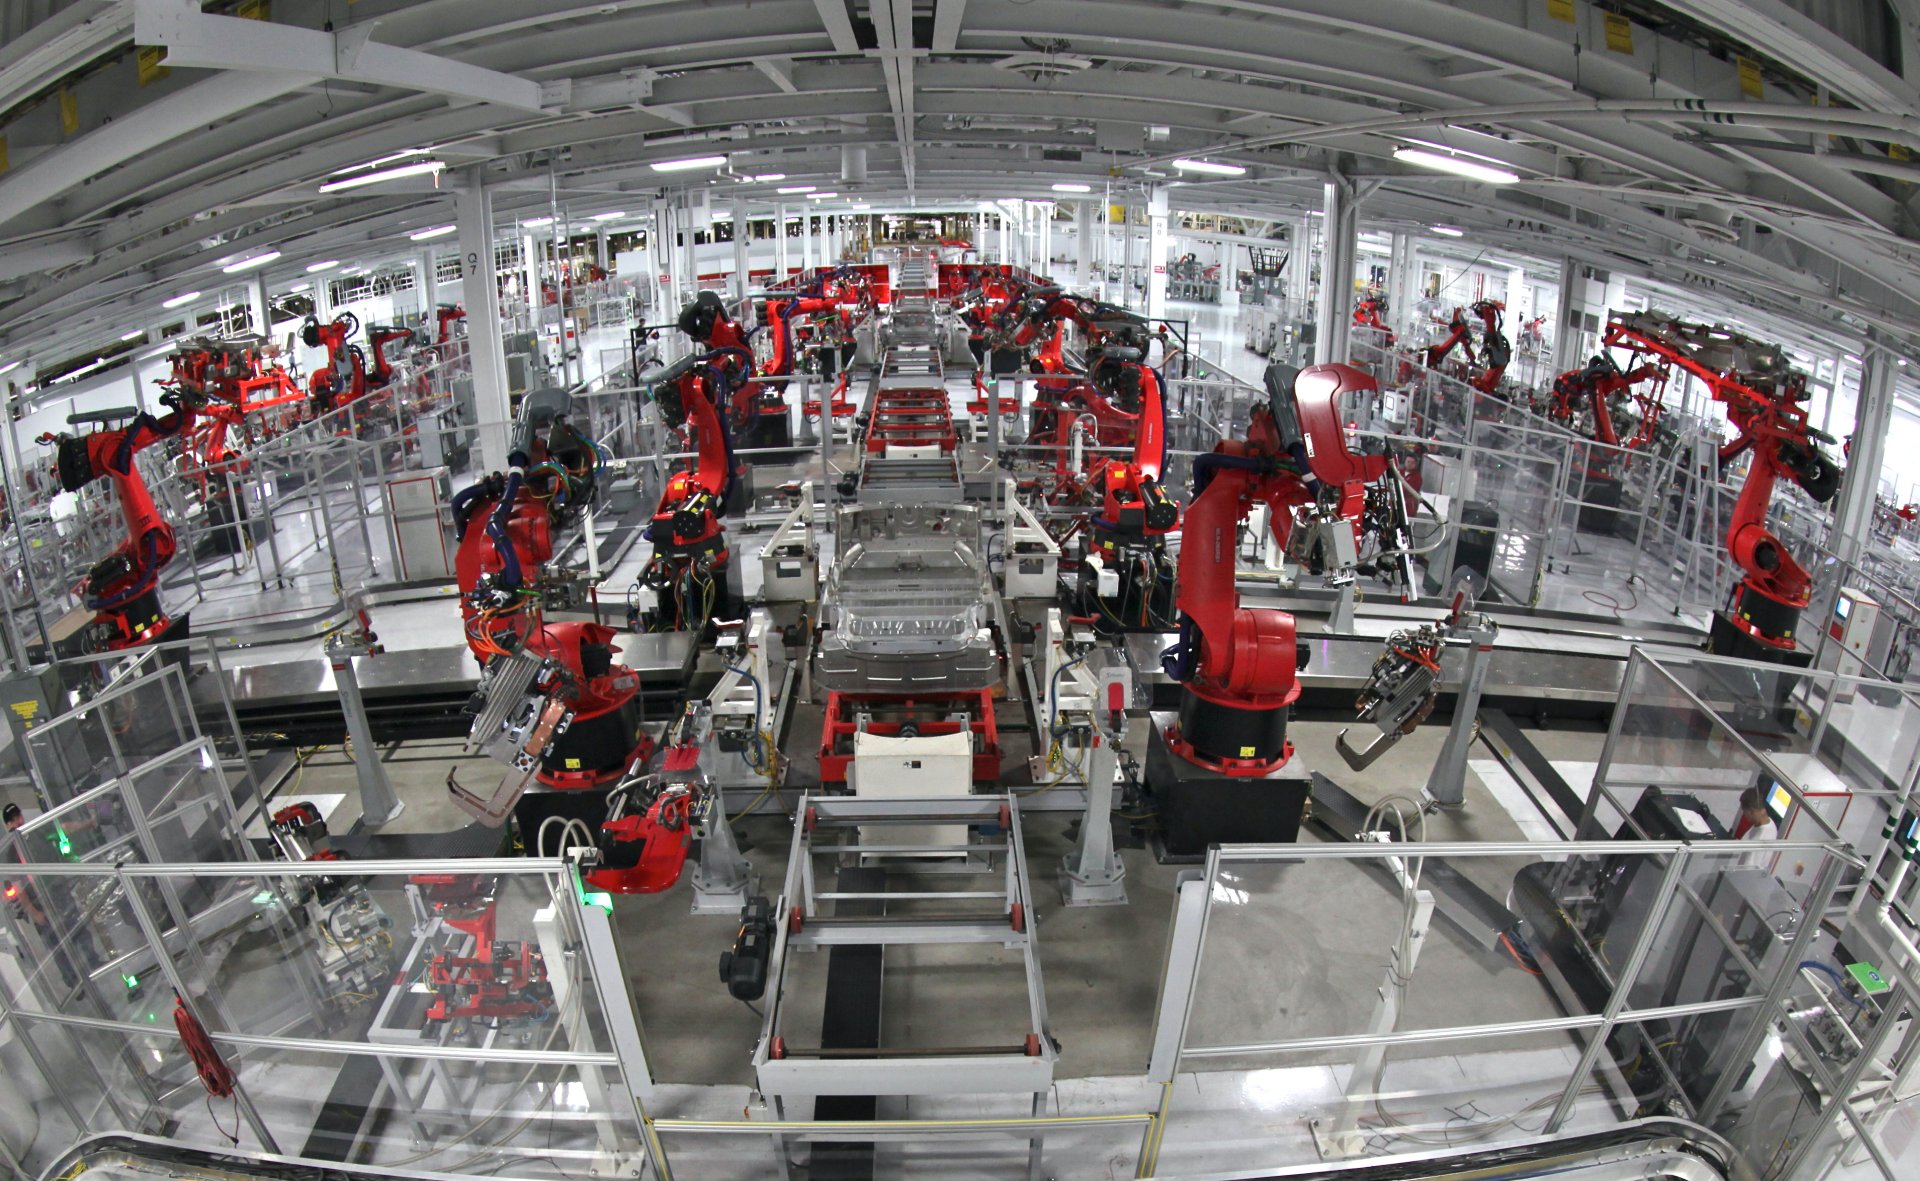 Tesla Demolishes Model 3 Production Line at Fremont To Make Way